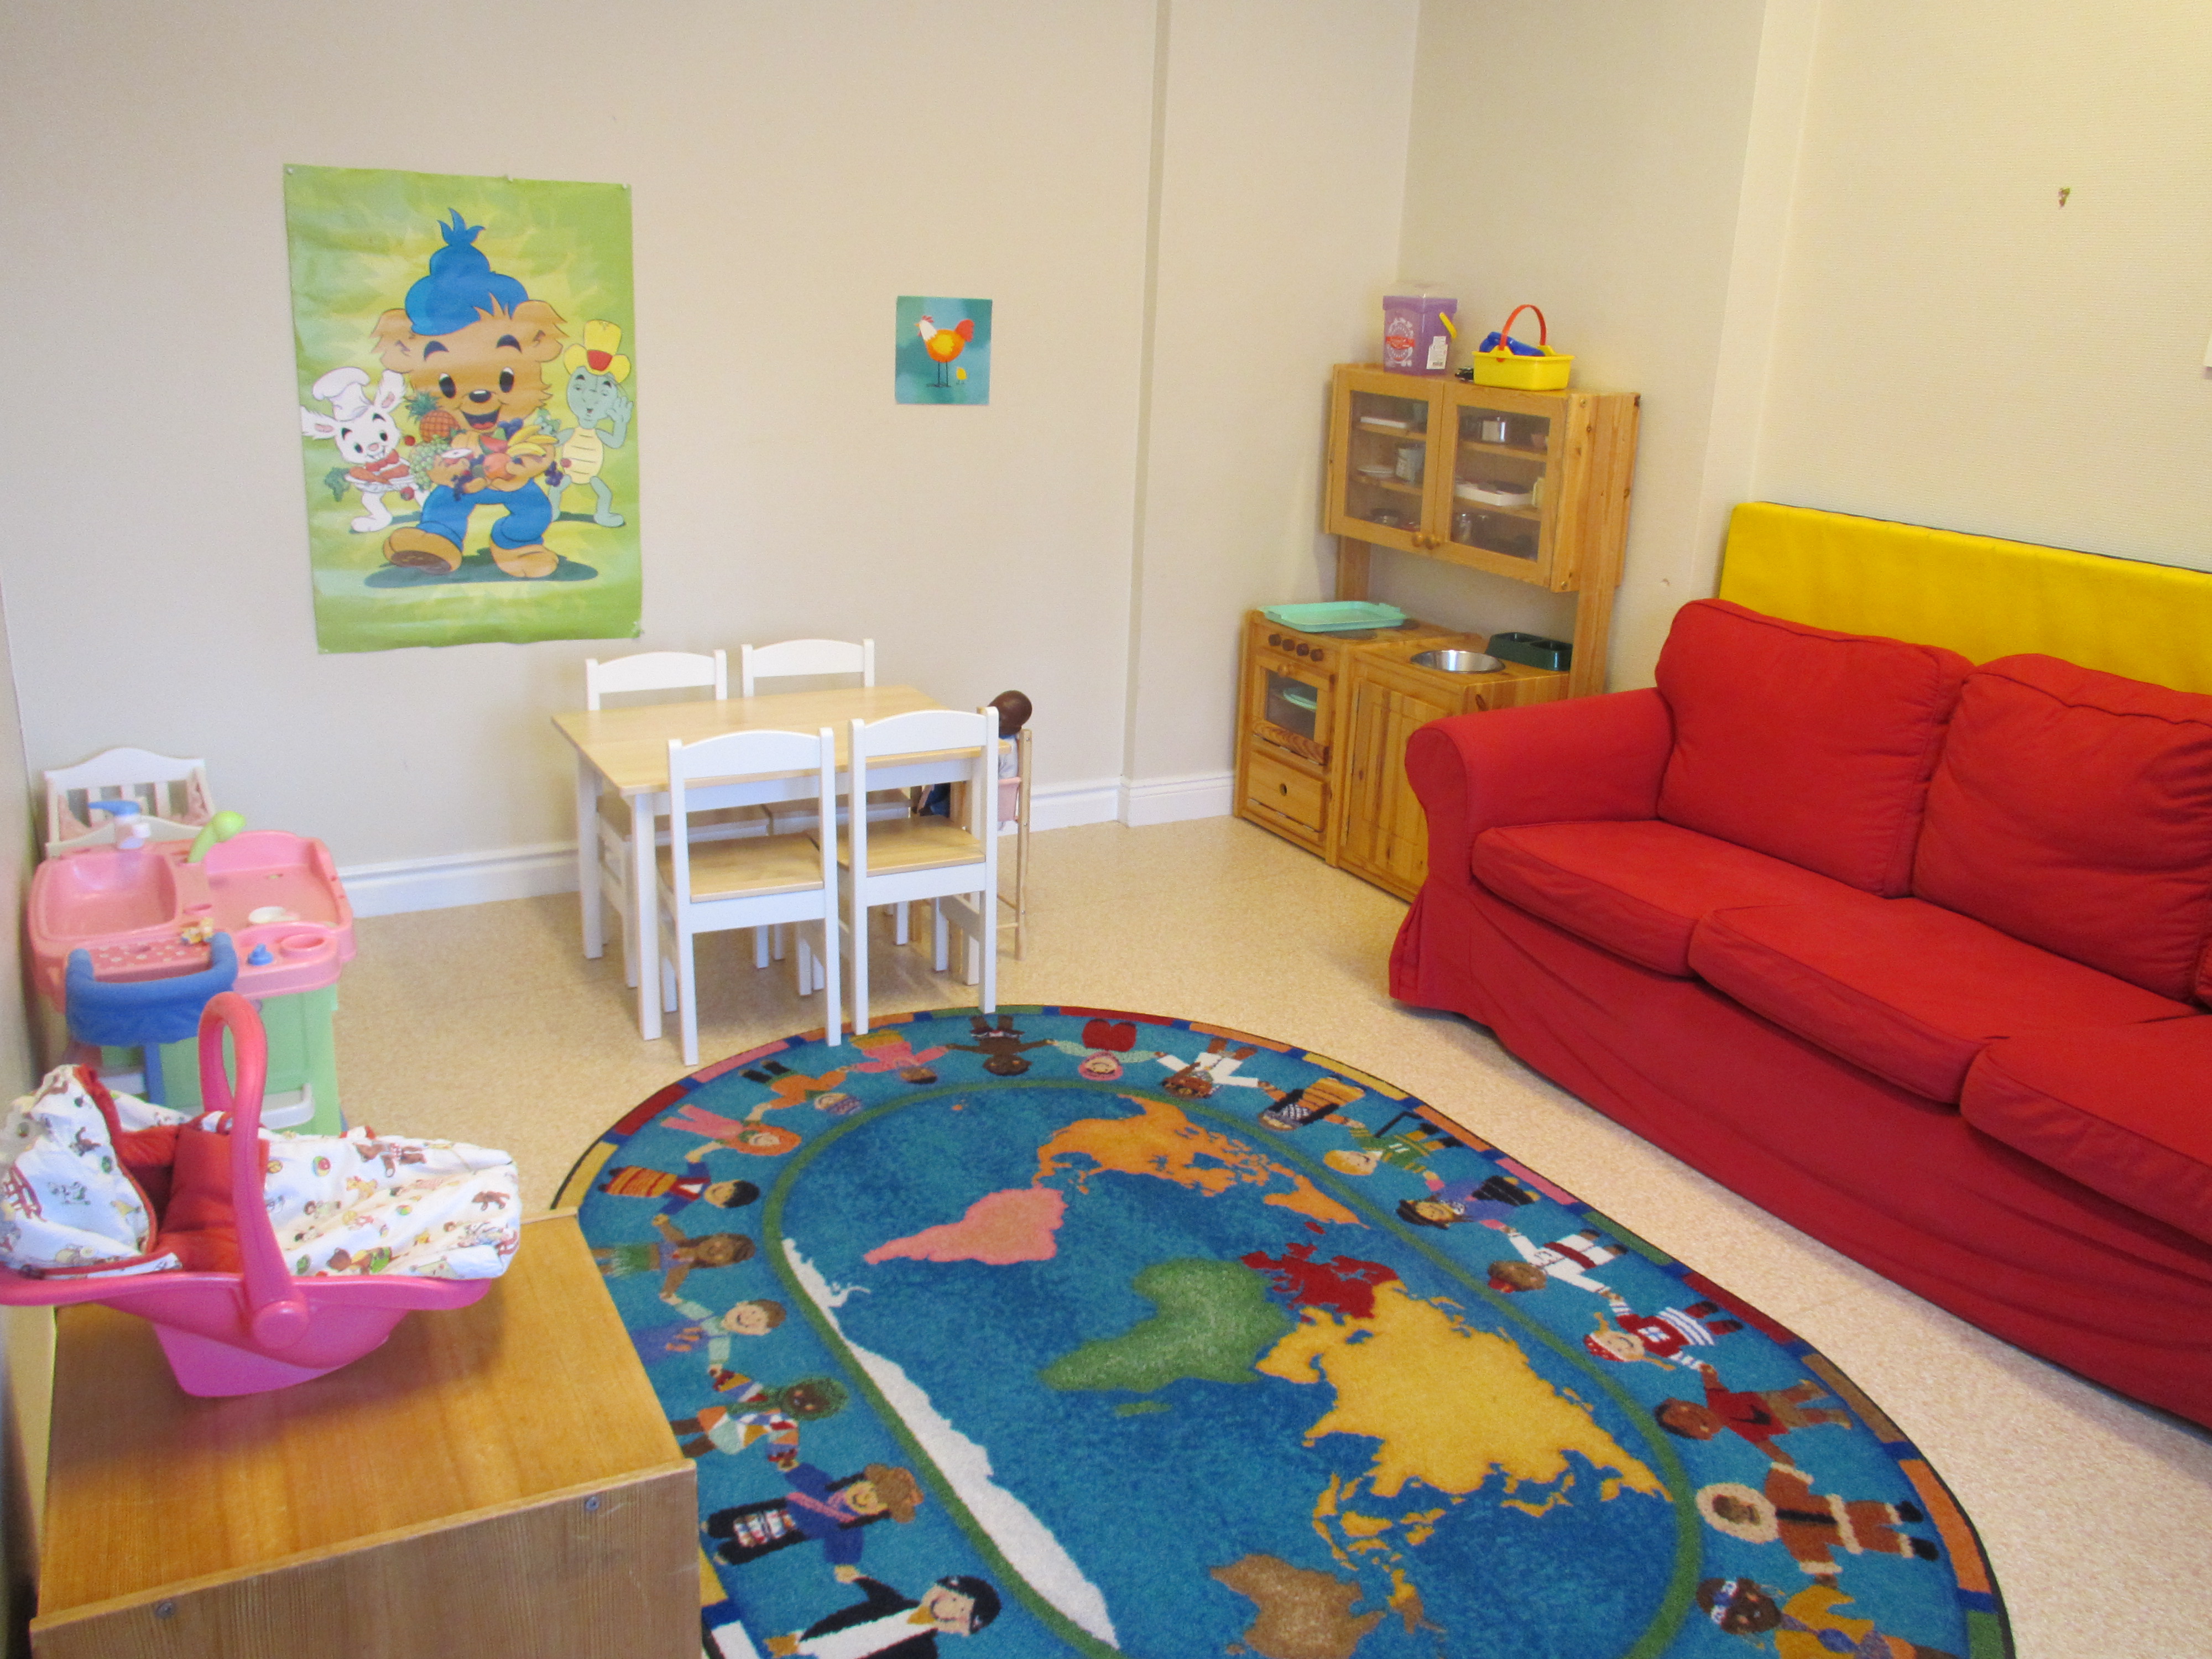 En stor färgglad matta ligger mitt på golvet. Efter en väggen står en röd soffa. Bredvid soffan står ett leksakskök. Ett litet fyrkantigt bord med stolar. En affisch på Bamse sitter på väggen.